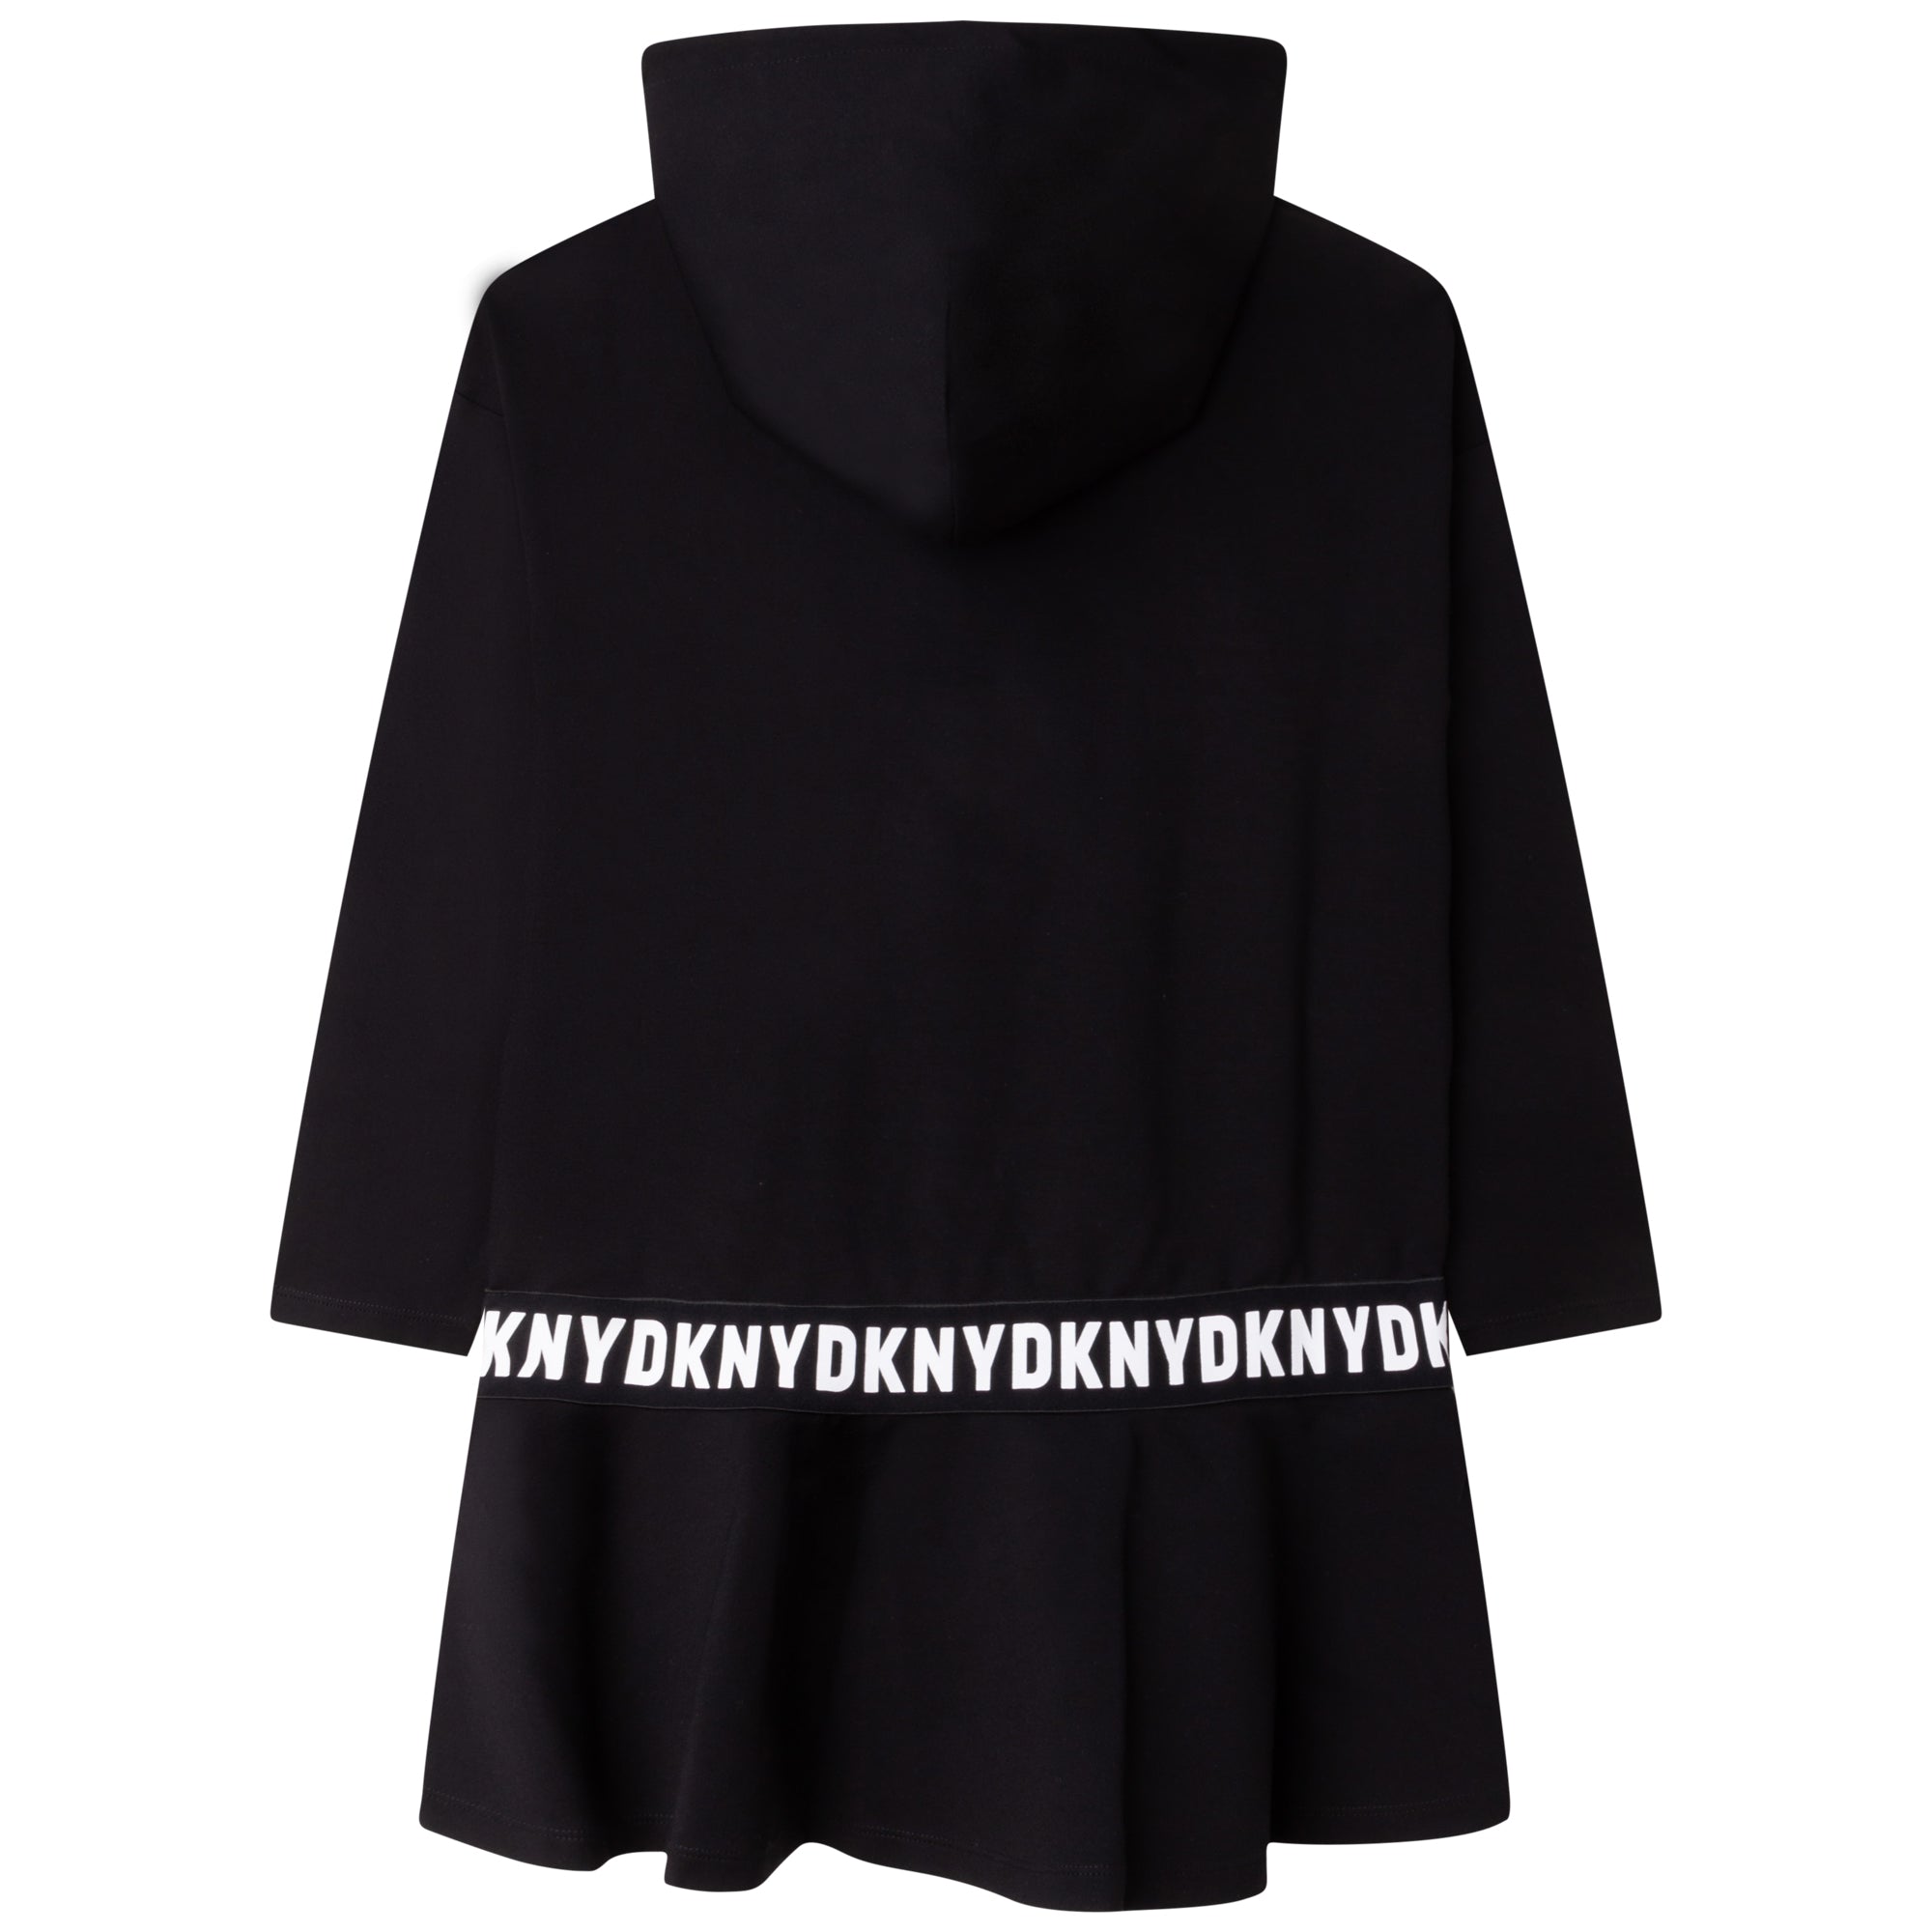 Dkny Girls Black Hooded Logo Dress 16Y